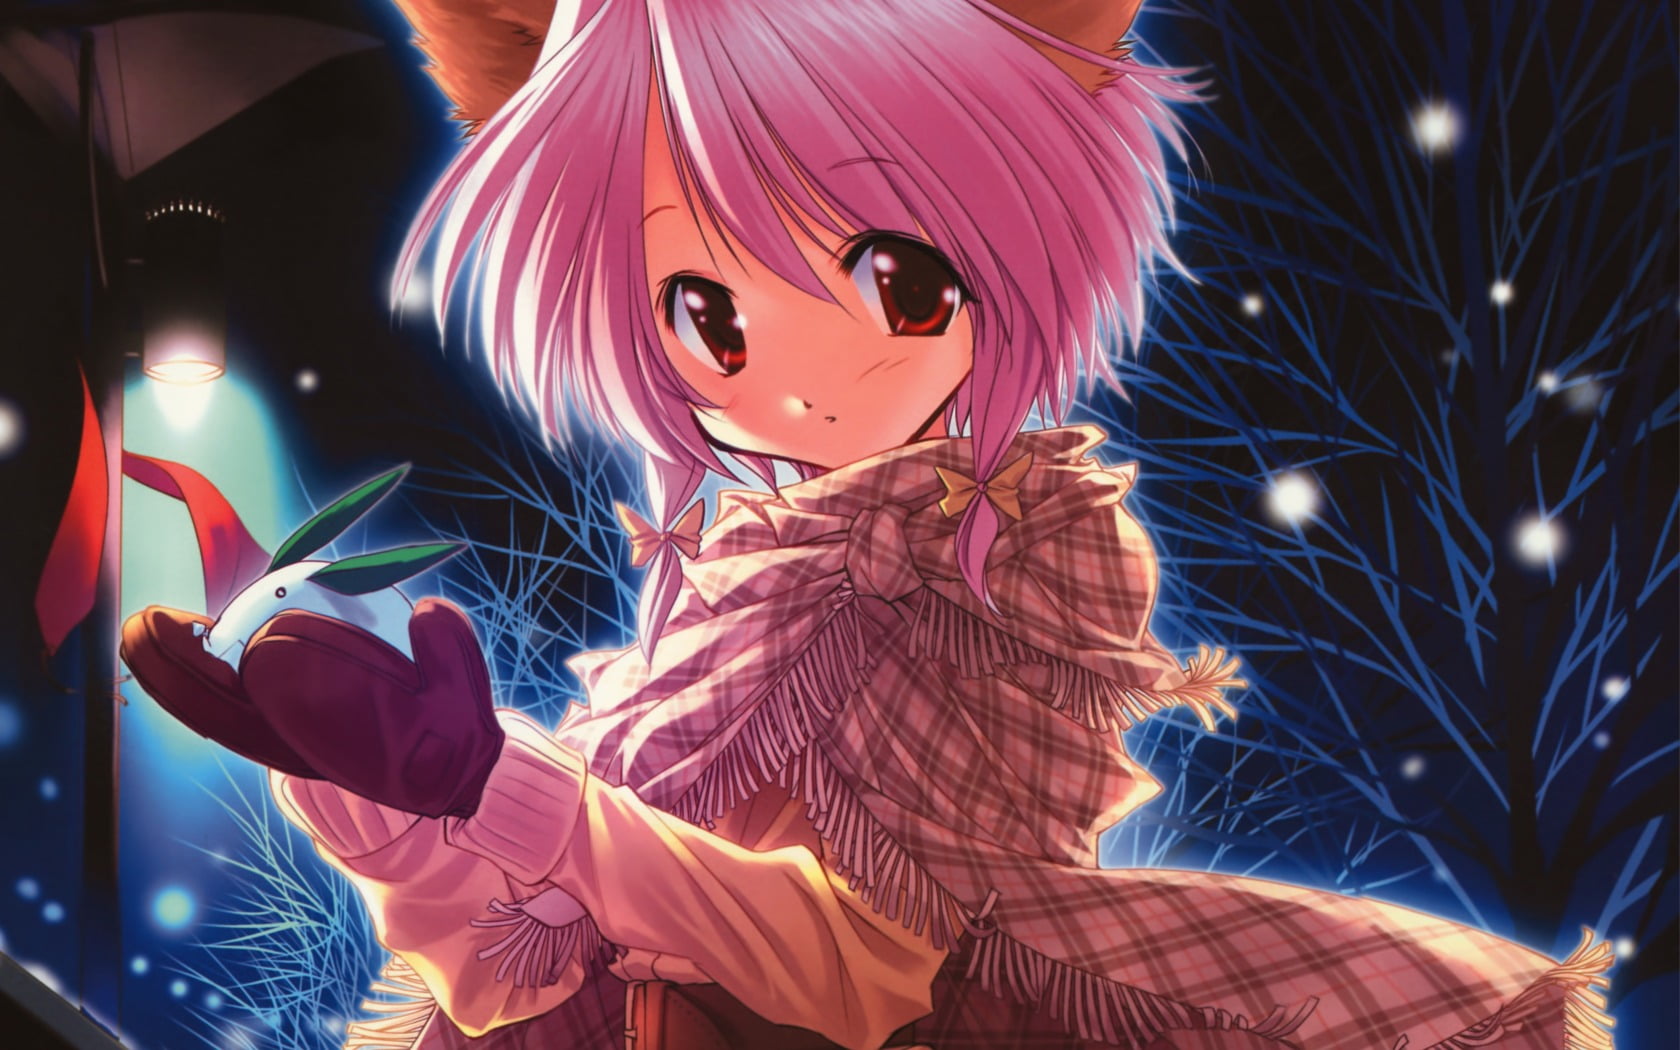 girl anime character holding white rabbit poster